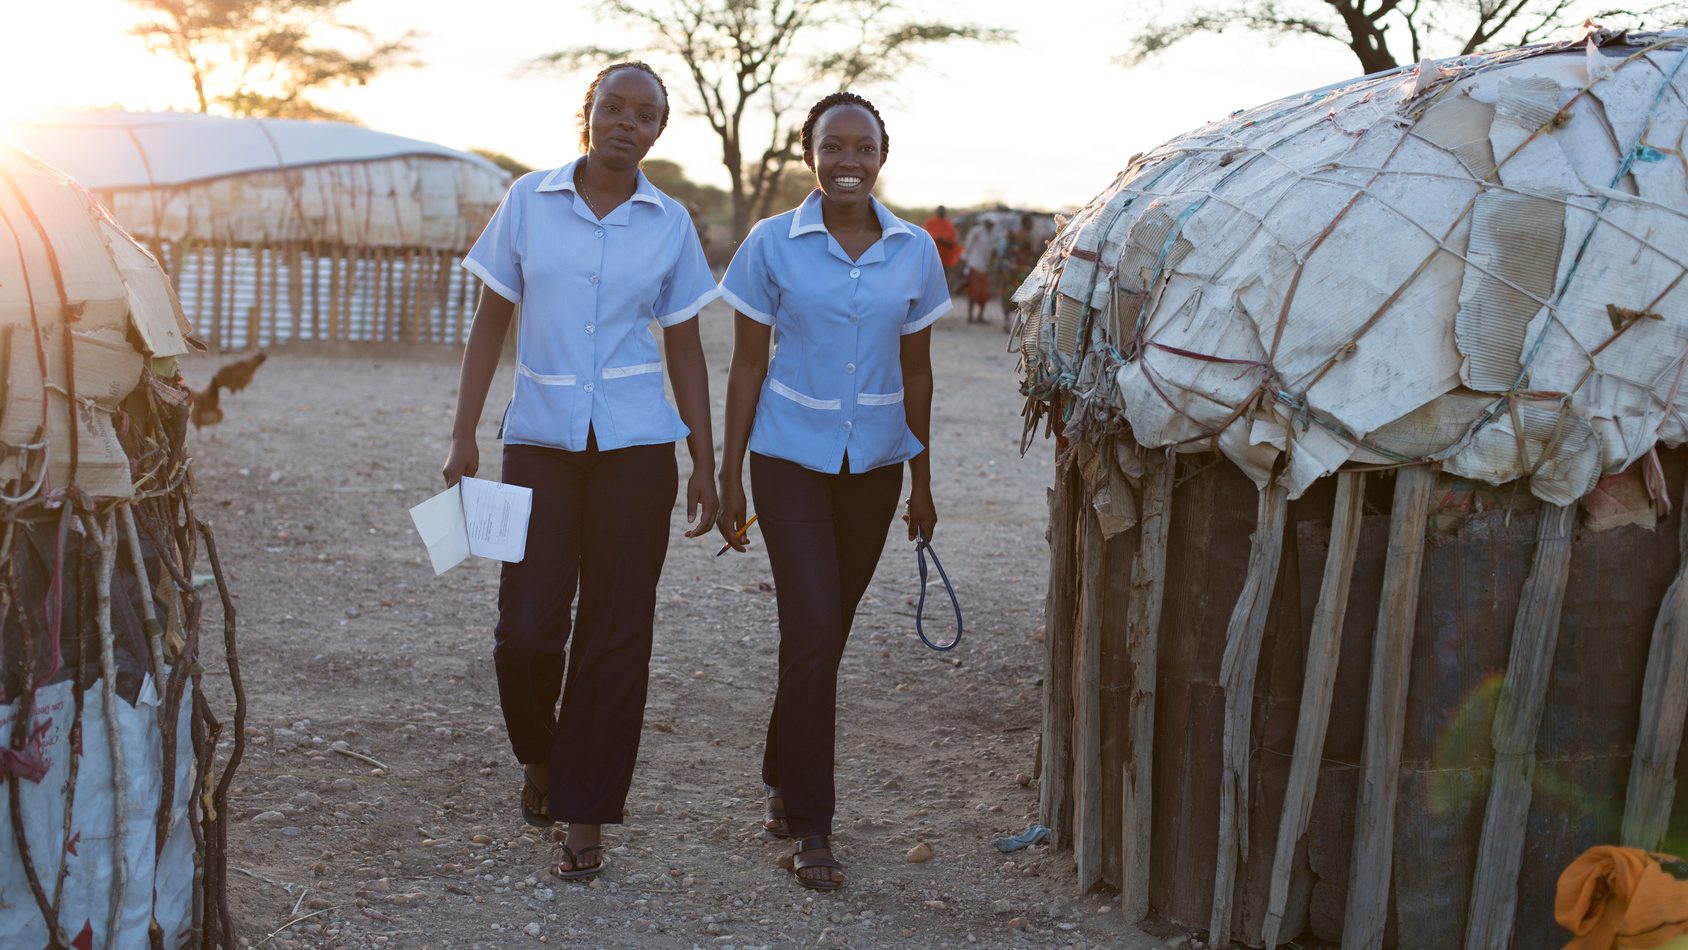 Two nurses working in rural village location. Kenya, Africa.